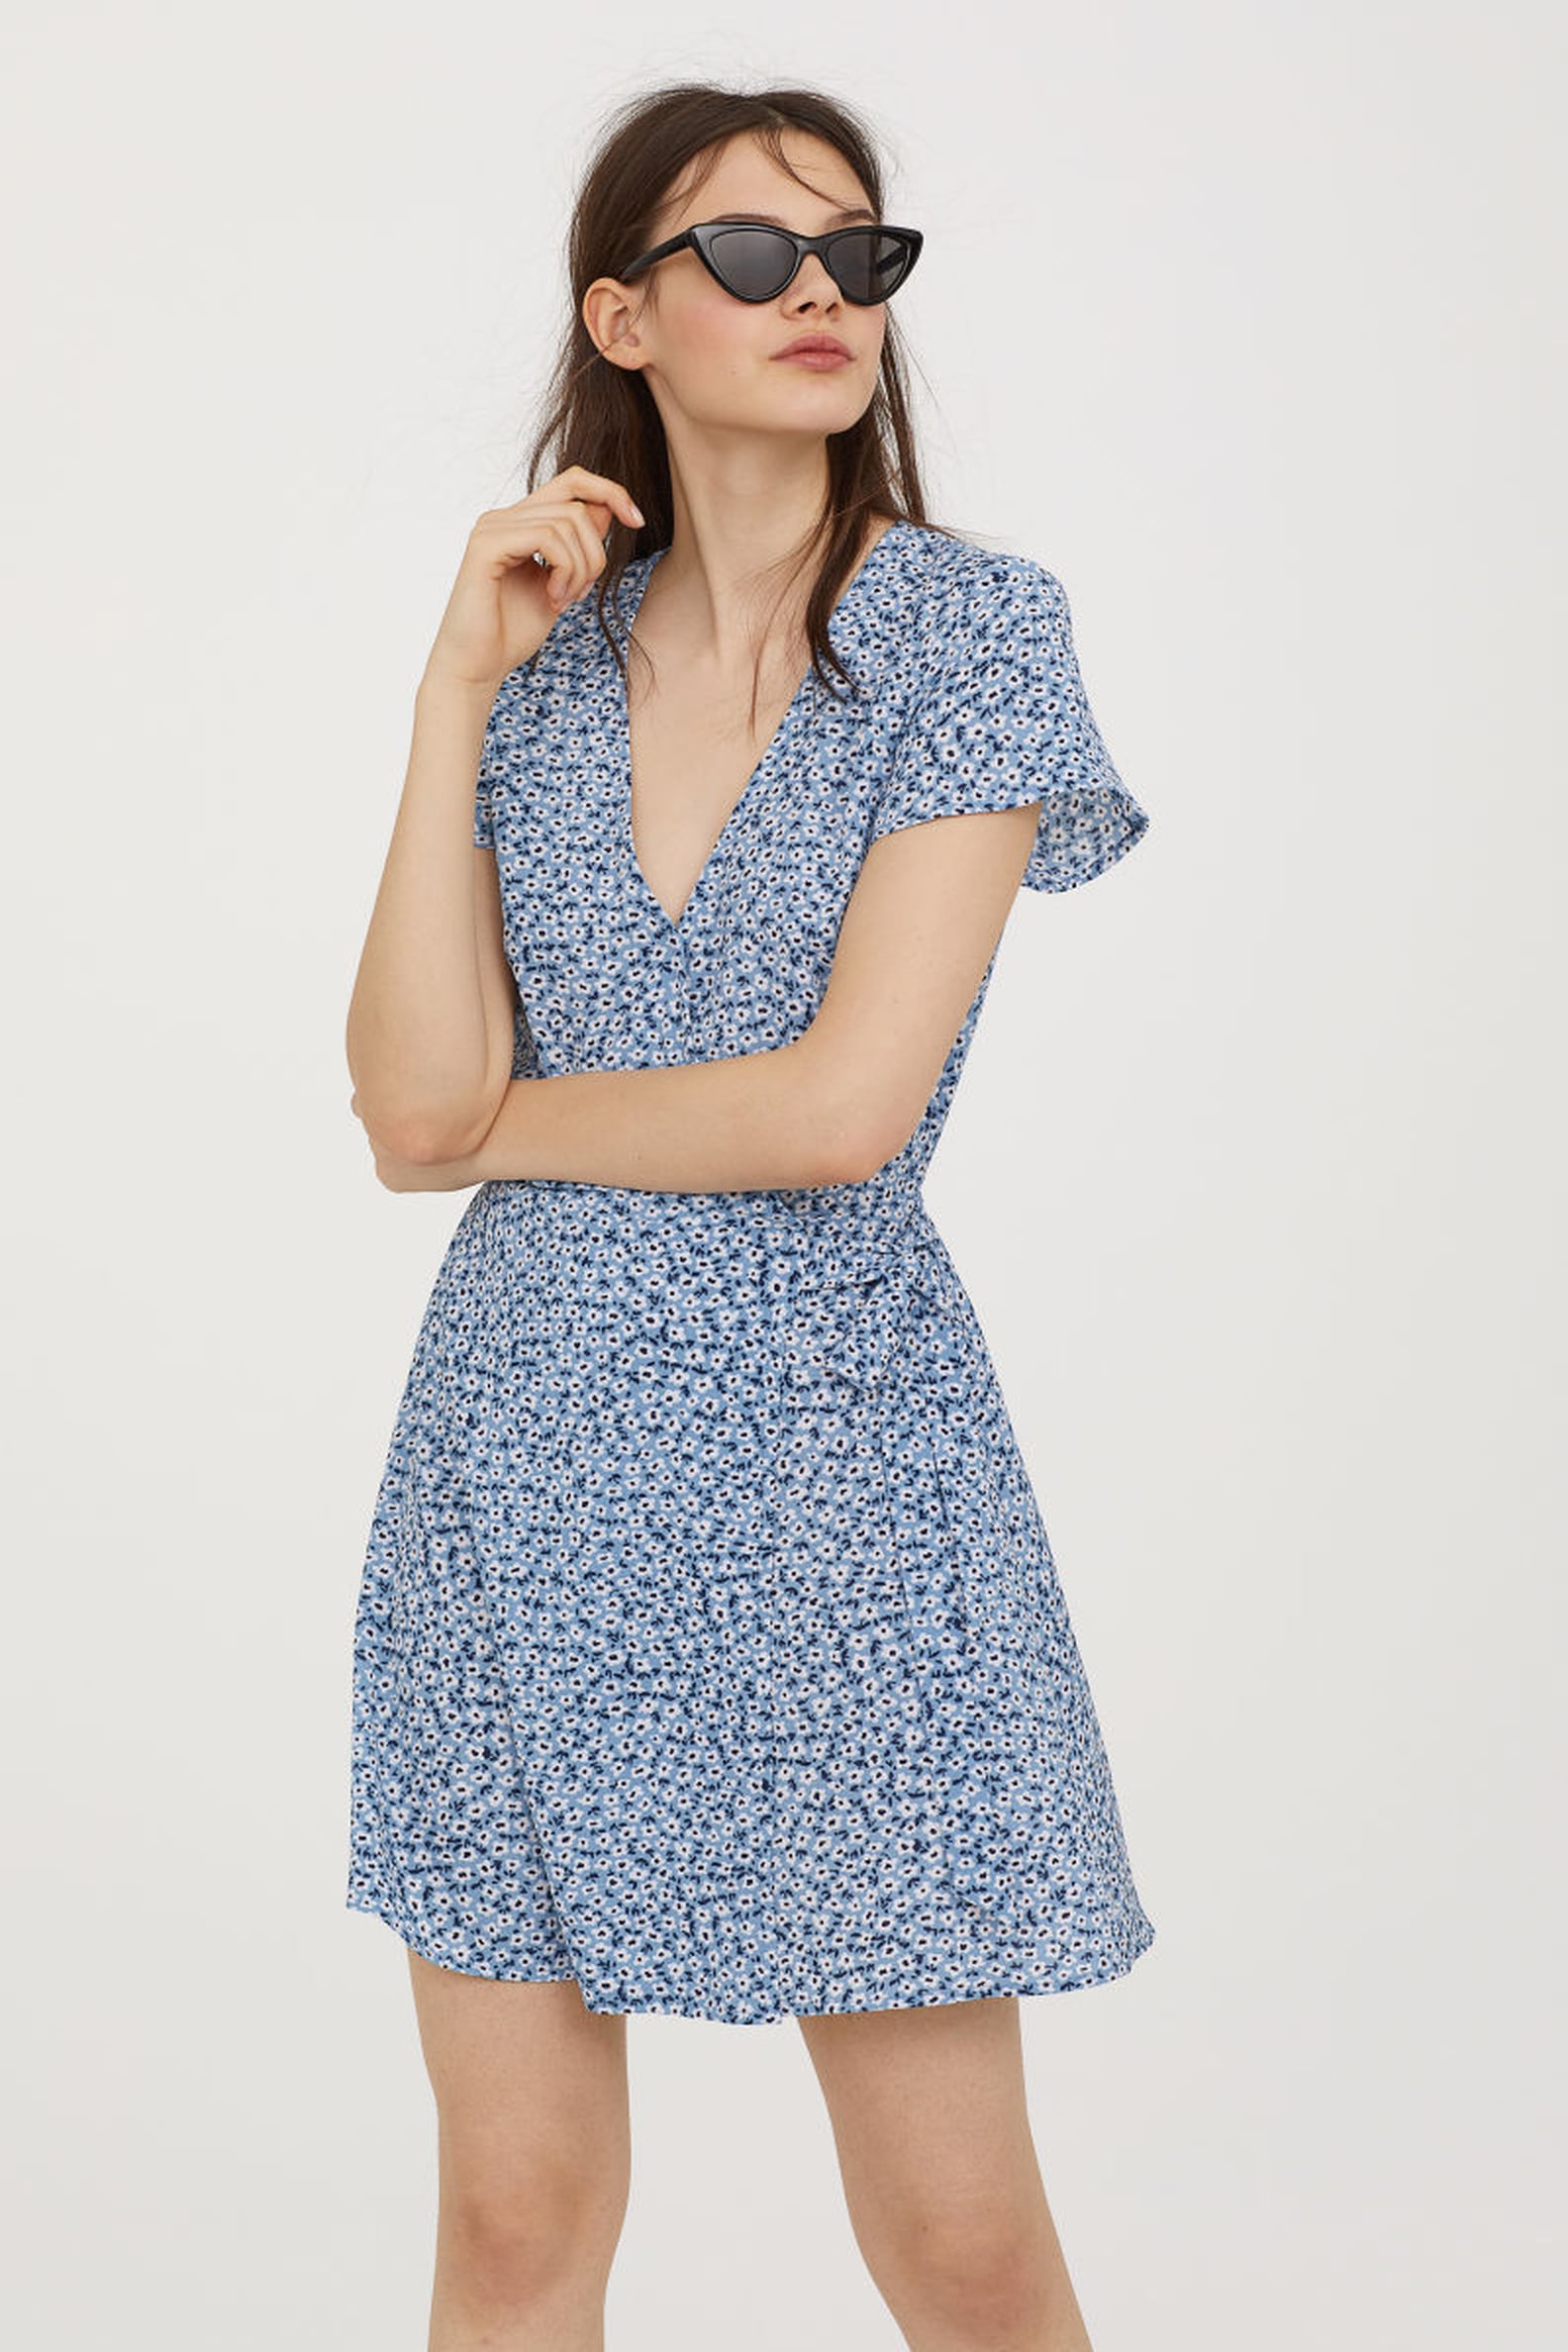 Best Spring Dresses at H&M | POPSUGAR Fashion